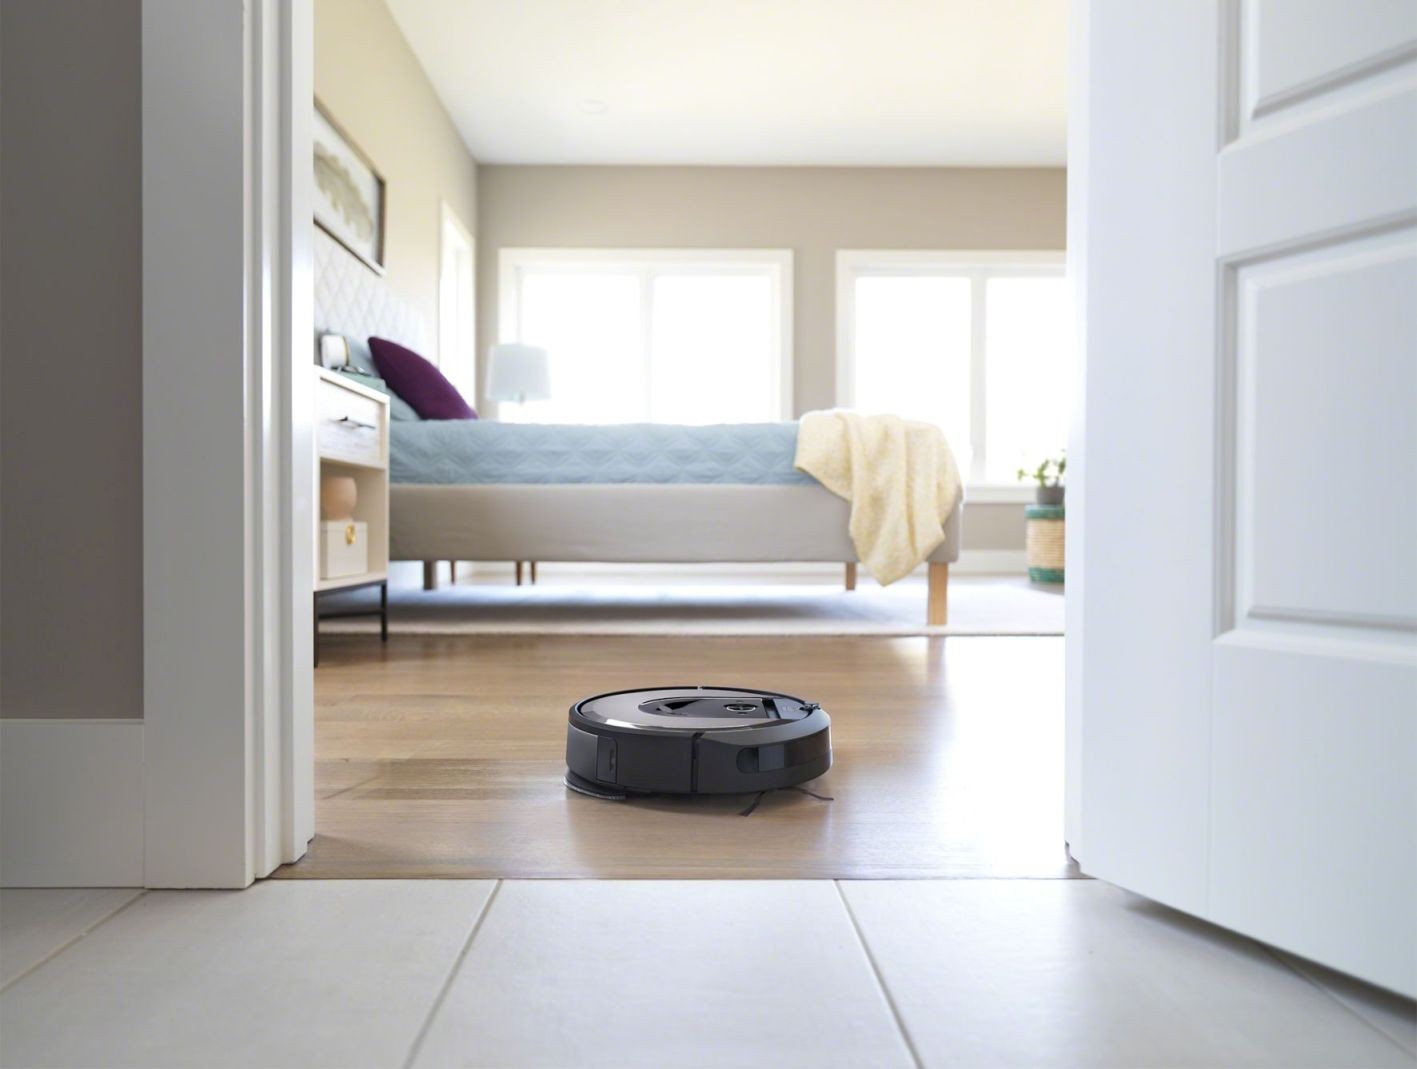 Nowa Roomba Combo serii i8 od iRobot. Z tymi robotami sprzątającymi codzienne porządki będą przyjemniejsze